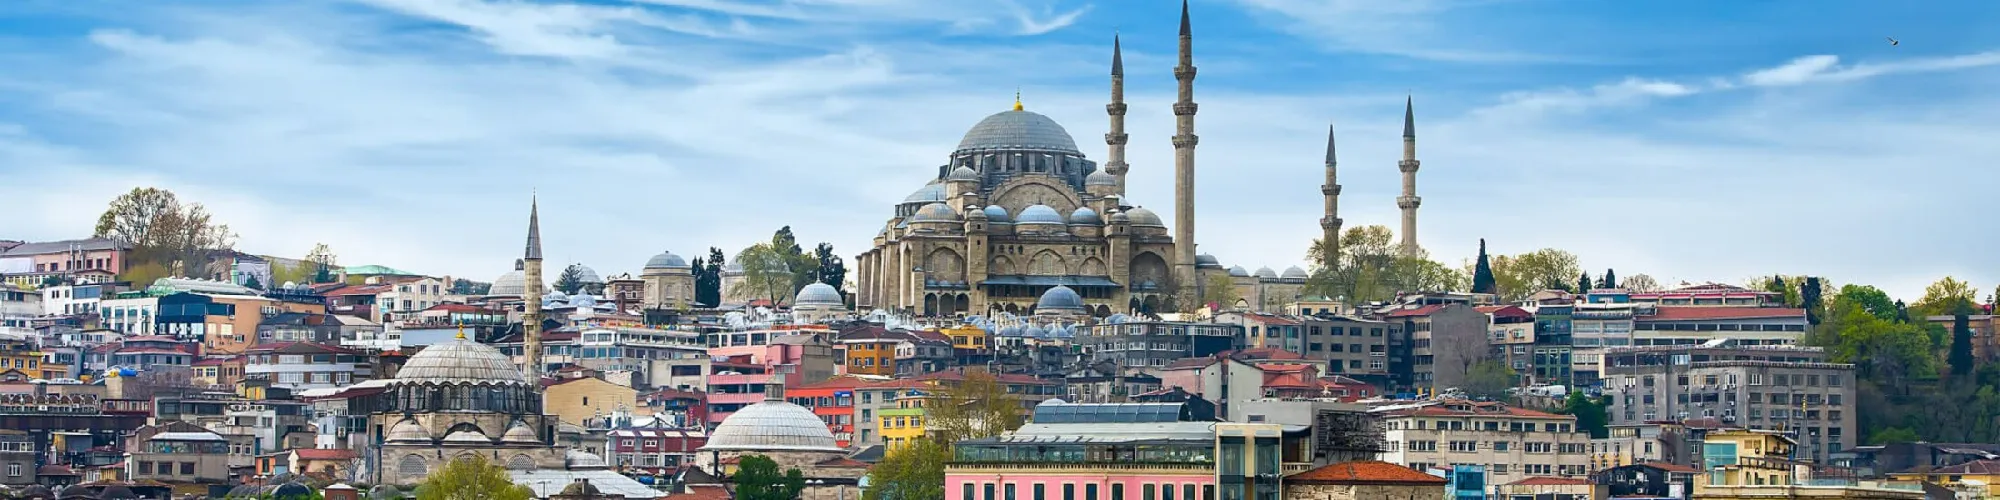 Städtereise Istanbul background image